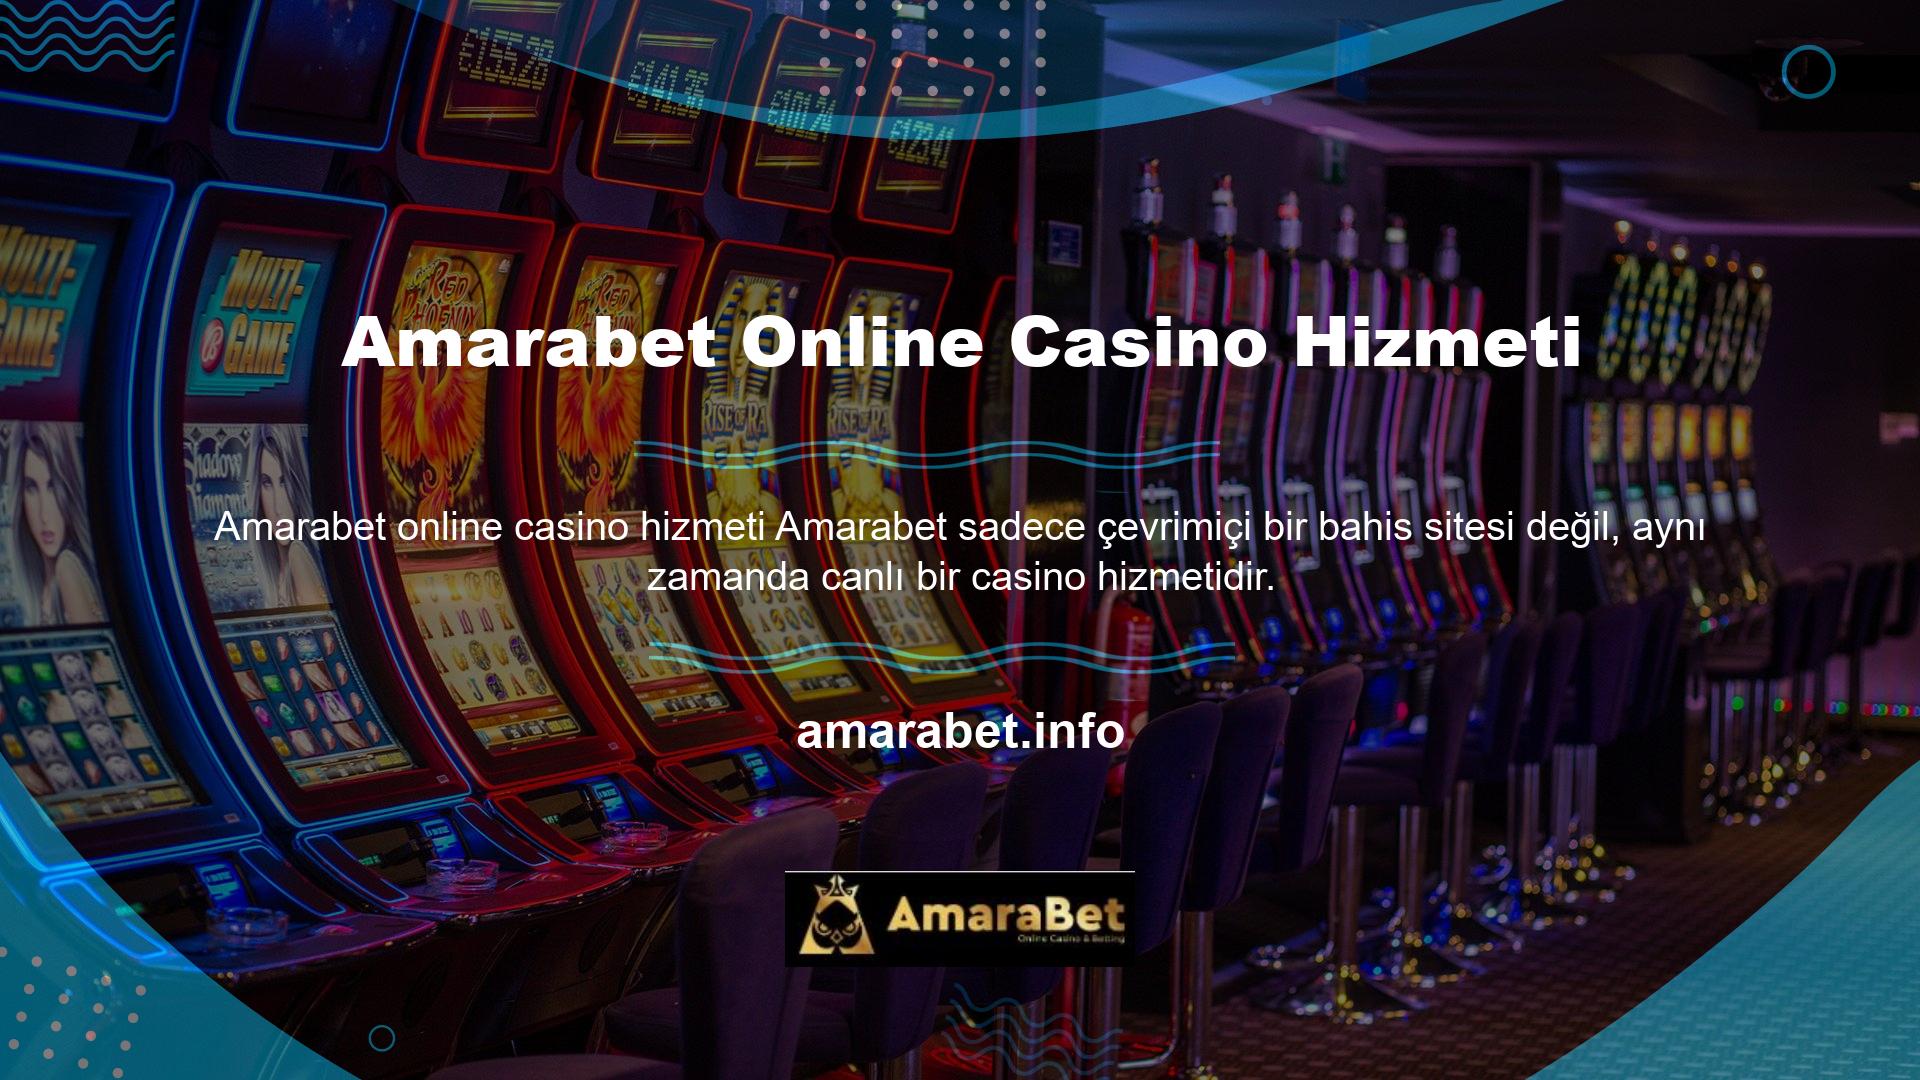 Amarabet hem online bahis hem de canlı casino hizmetlerini sunarak bahis tutkunları ve casino tutkunları için büyük bir kolaylık sunuyor